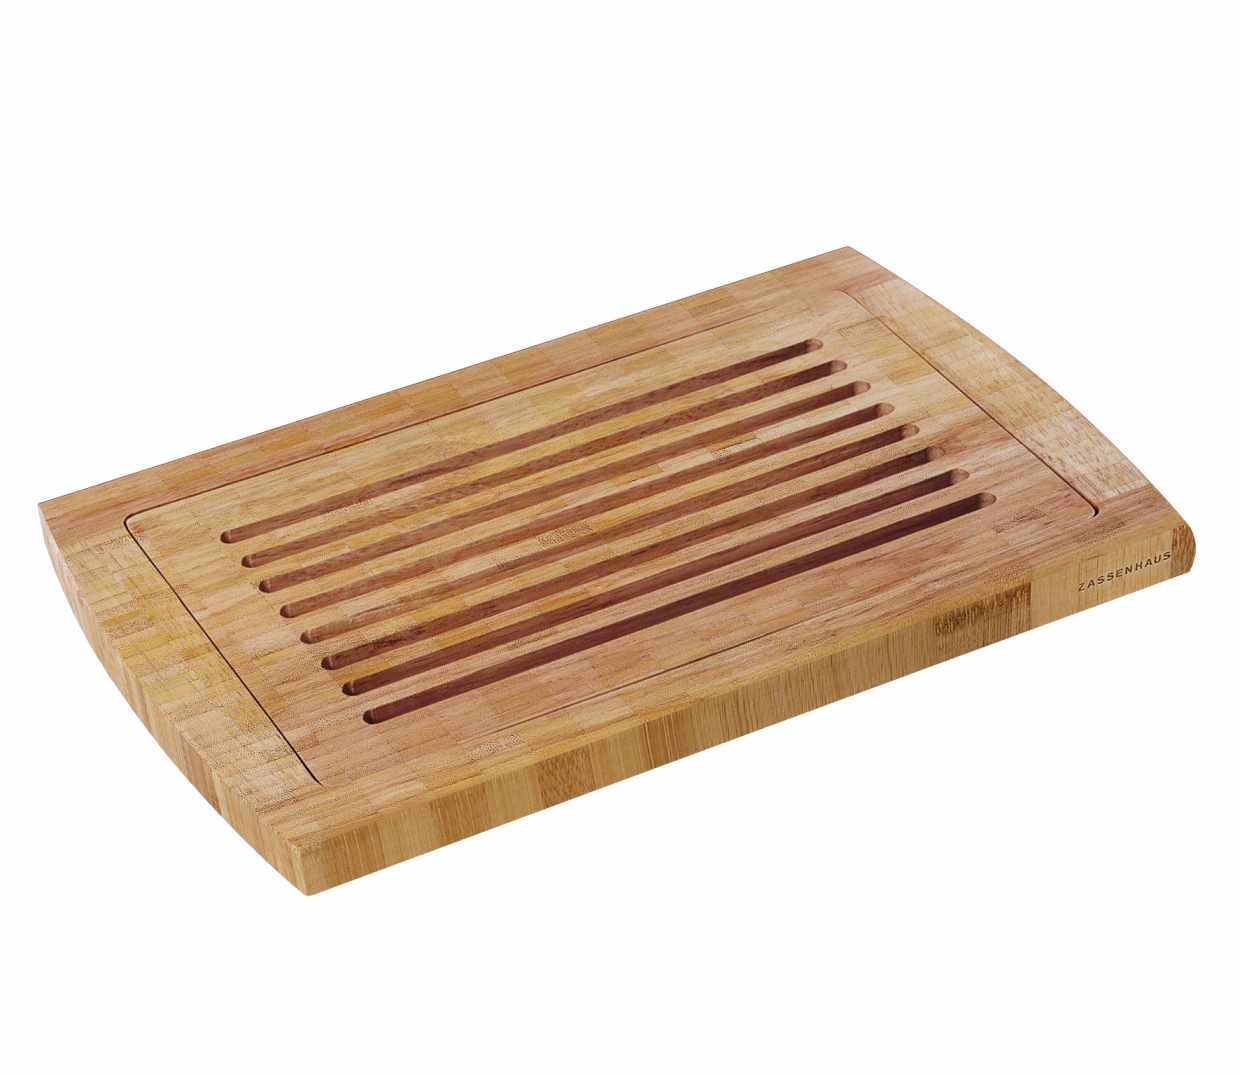 Prkénko na krájení chleba 42 x 28,5 x 2 cm, bambus - Zassenhaus